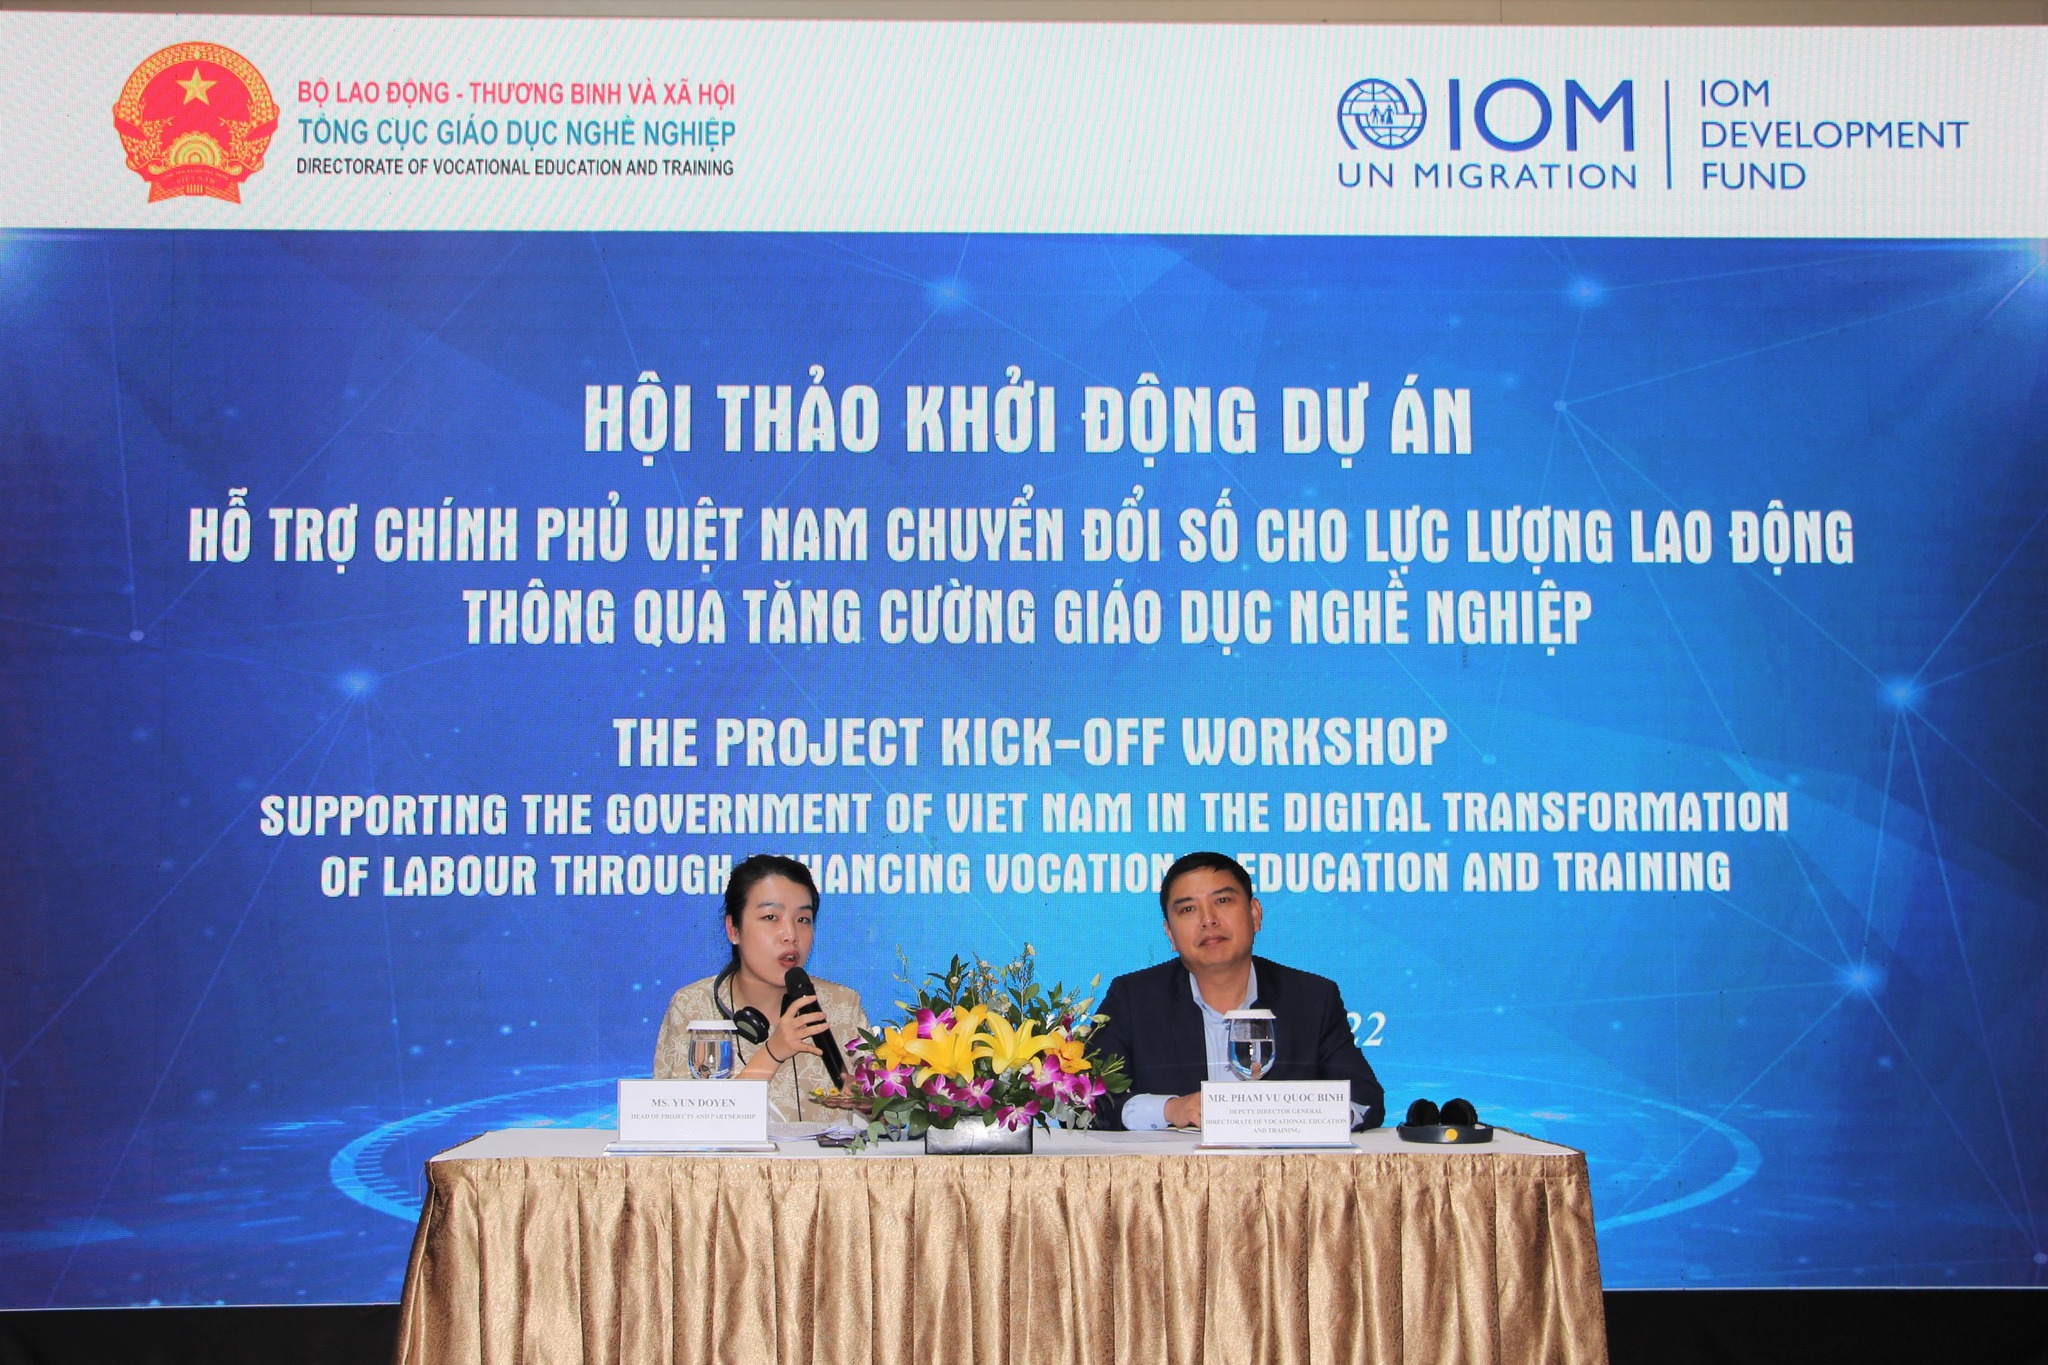 Khởi động Dự án Hỗ trợ Chính phủ Việt Nam chuyển đổi số cho lực lượng lao động thông qua tăng cường giáo dục nghề nghiệp